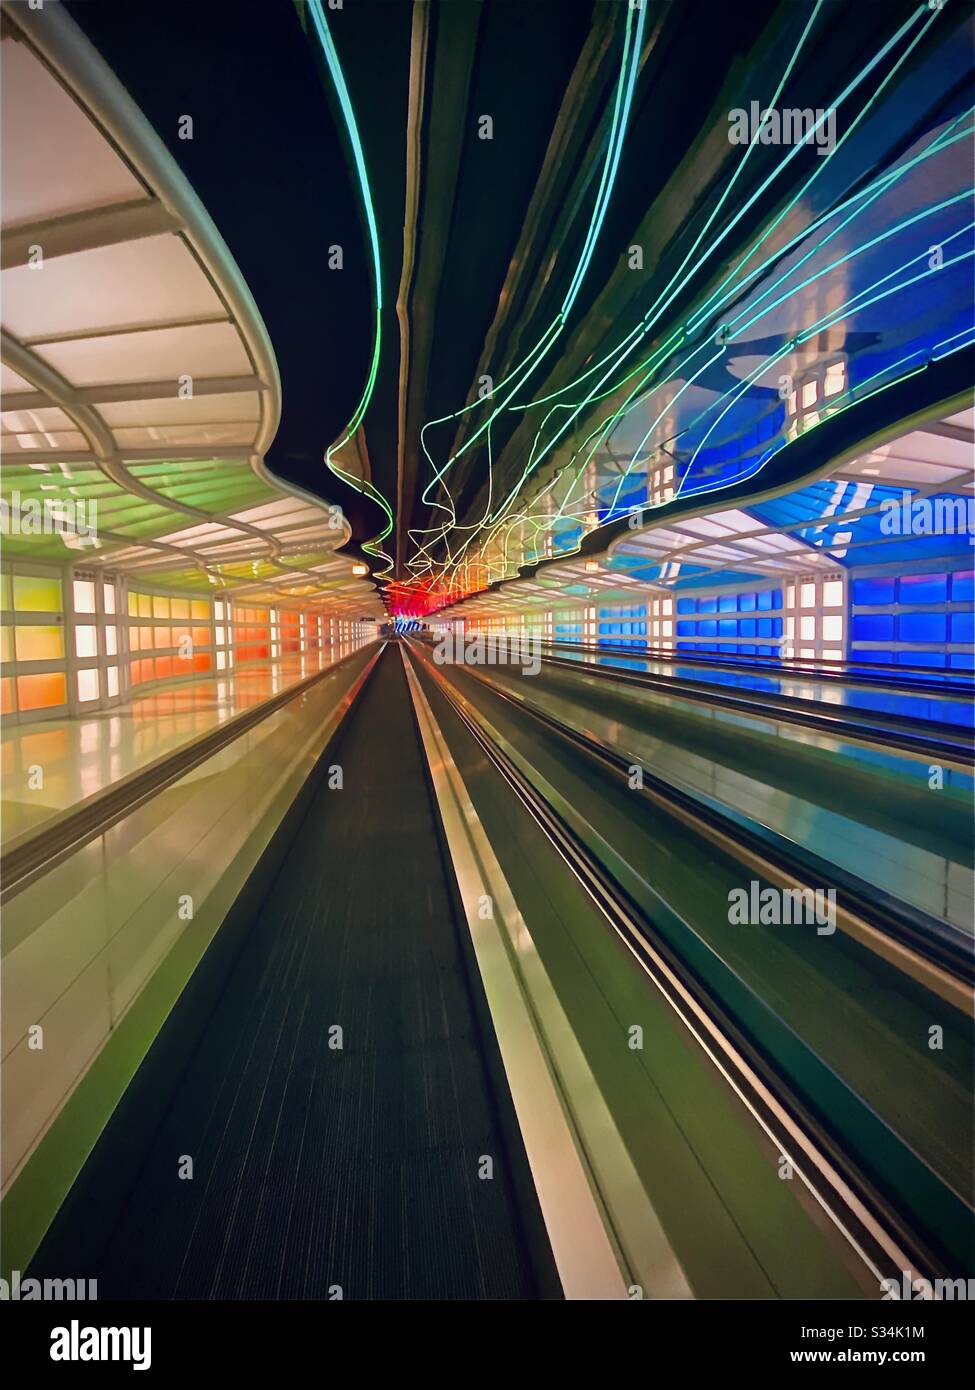 Aéroport international O’Hare à Chicago, Illinois. Tunnel entre les concours B et C du terminal Uni avec lumières fluo colorées mobiles et passerelle mobile. Banque D'Images